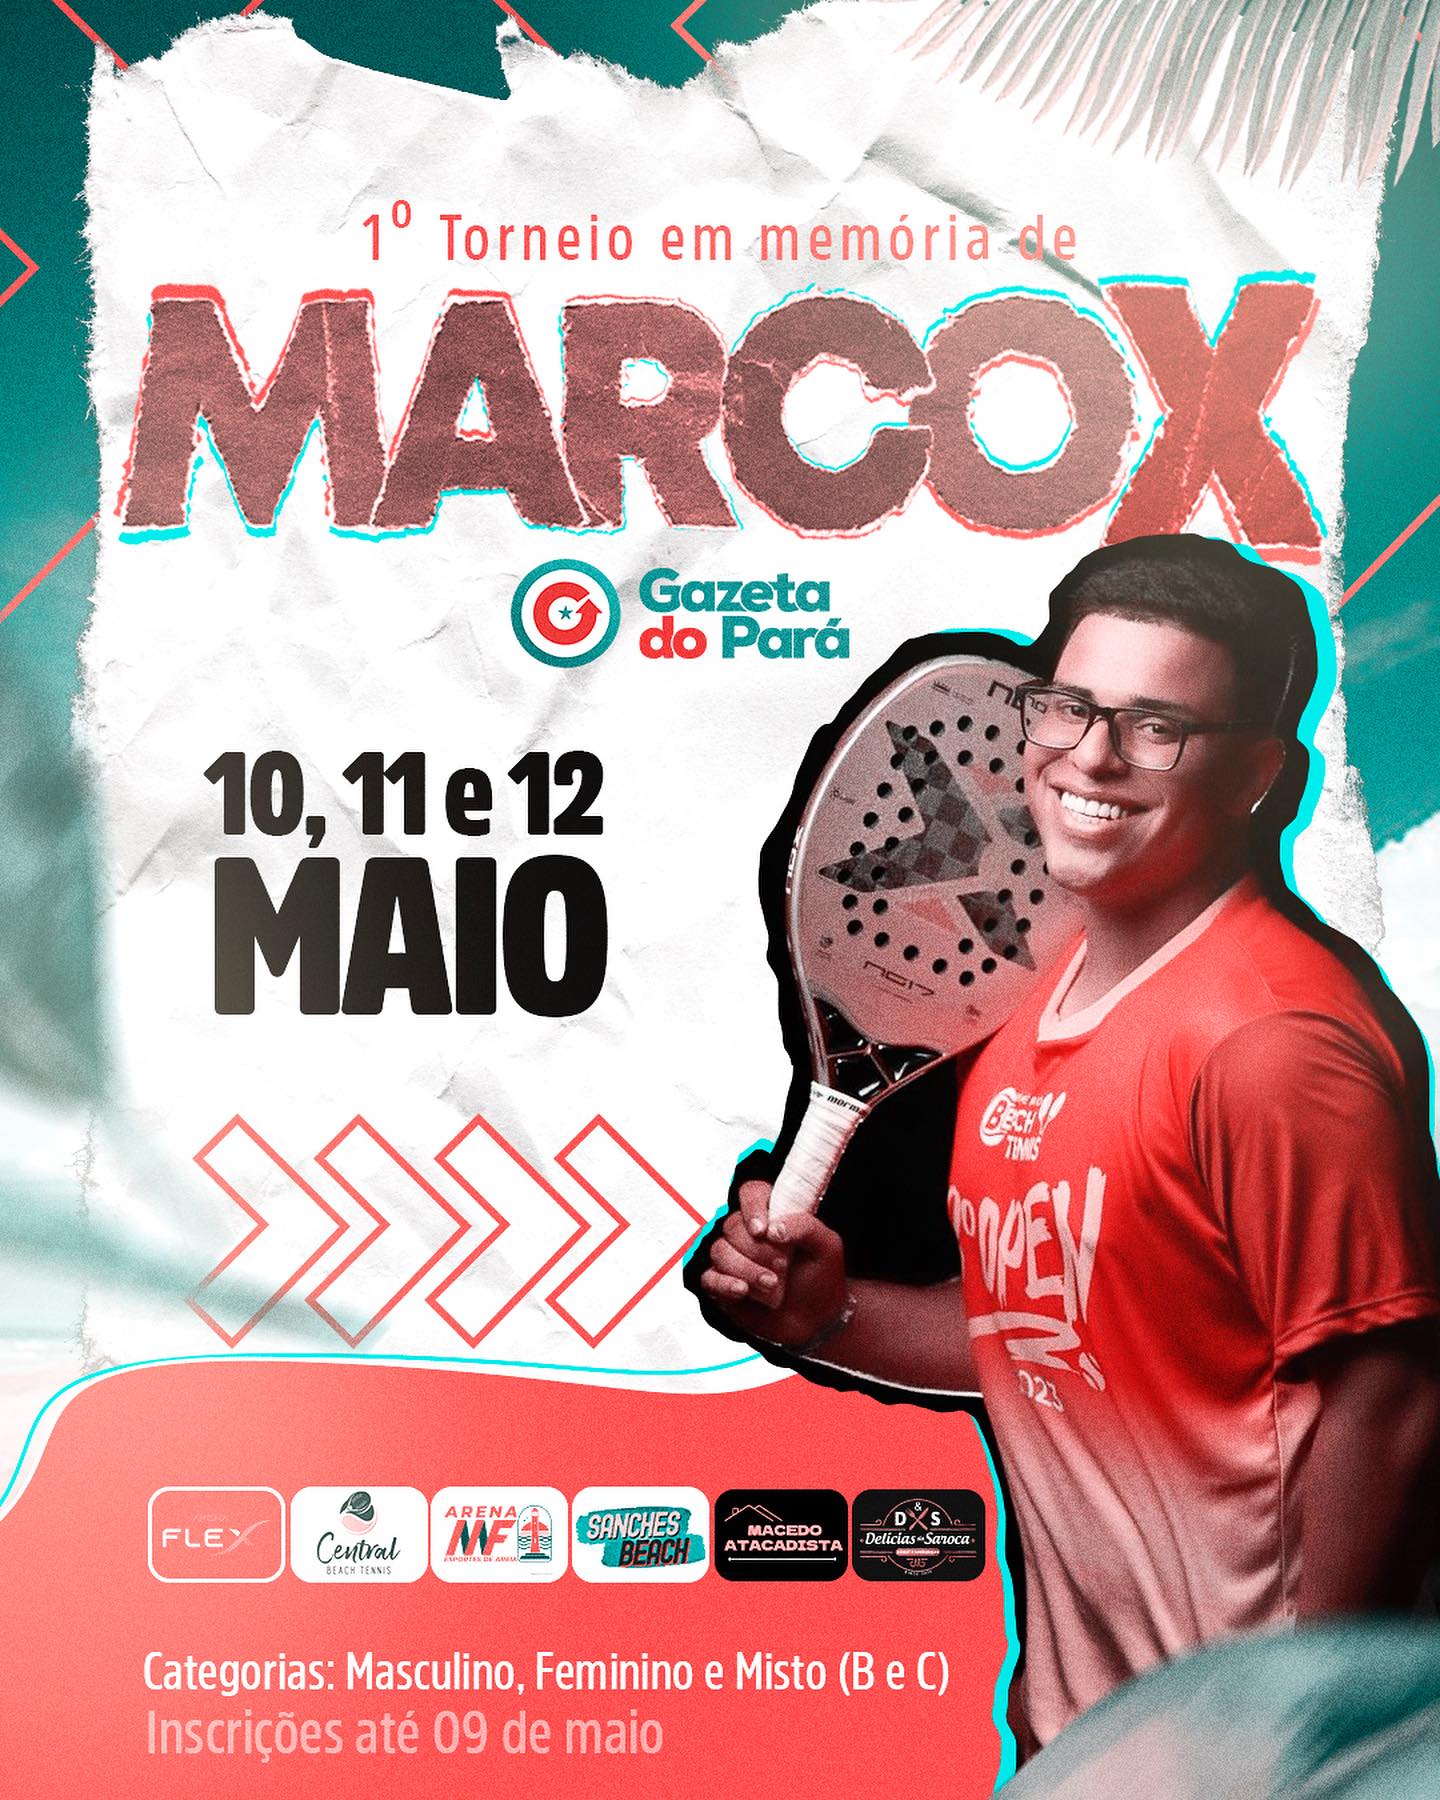 Com grande entusiasmo, anunciamos o primeiro torneio de Beach Tennis em memória de Marcox!